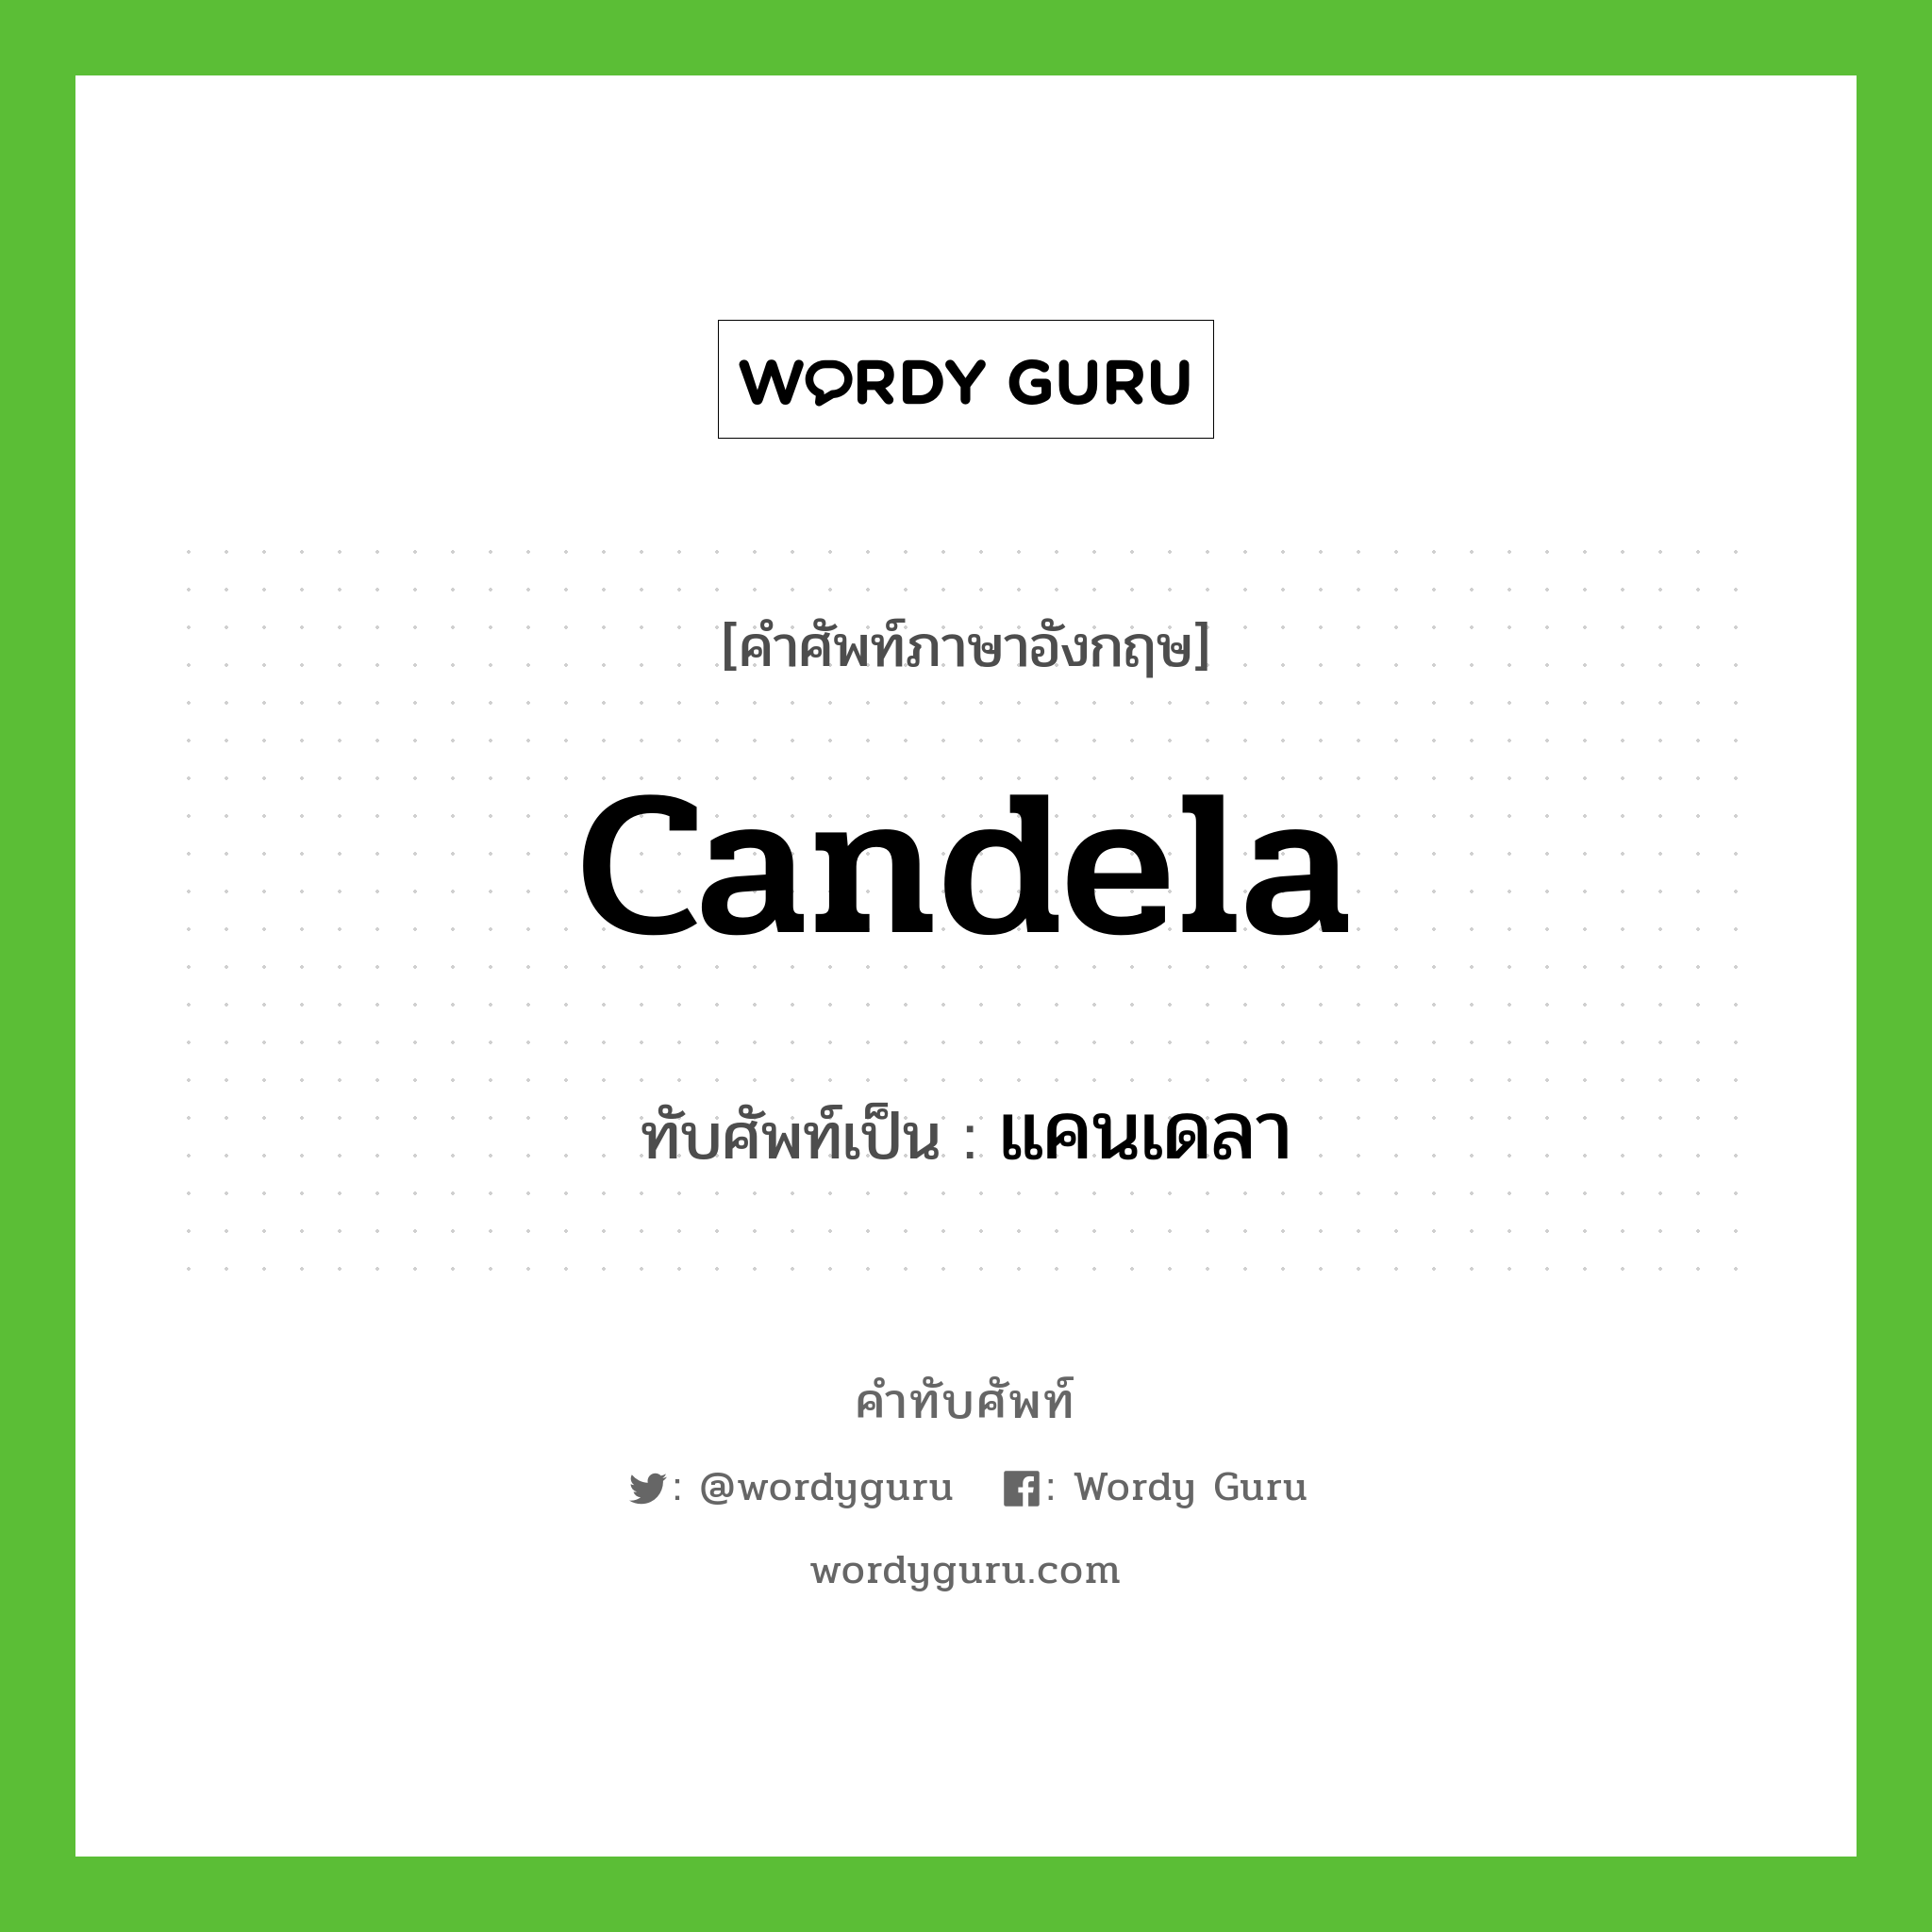 candela เขียนเป็นคำไทยว่าอะไร?, คำศัพท์ภาษาอังกฤษ candela ทับศัพท์เป็น แคนเดลา